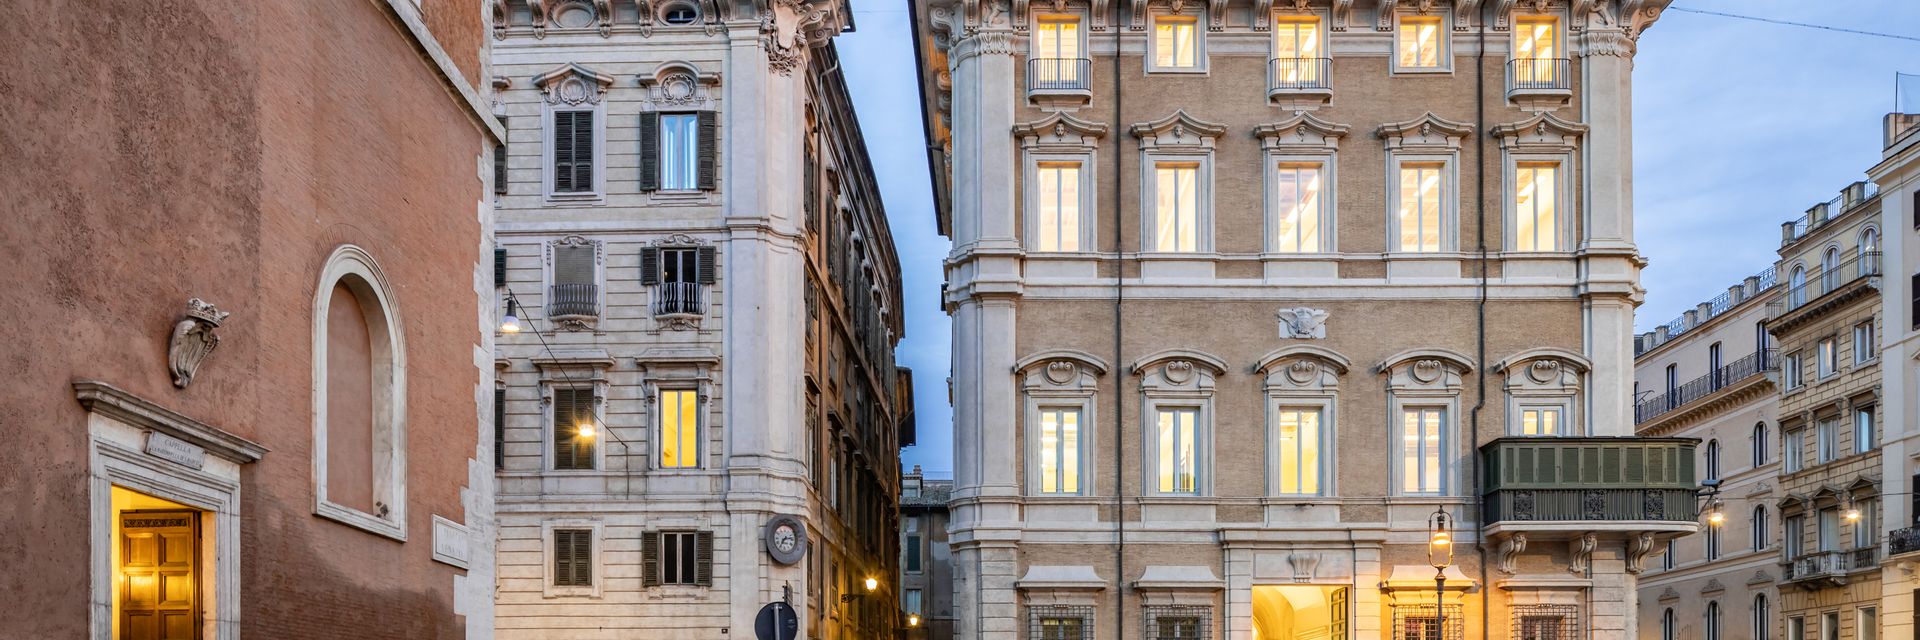 Palazzo Bonaparte - Generali Value Culture Space